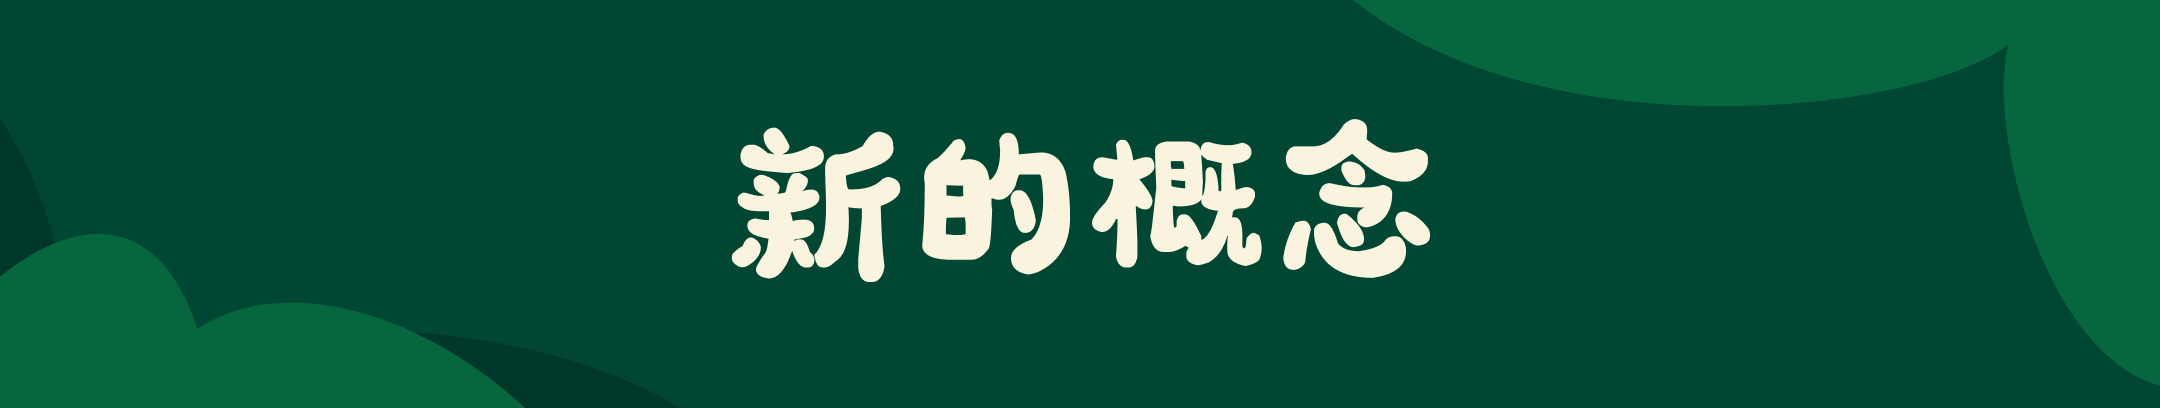 深绿色背景的宽幅 Banner，中间白色大字 “新的概念”。